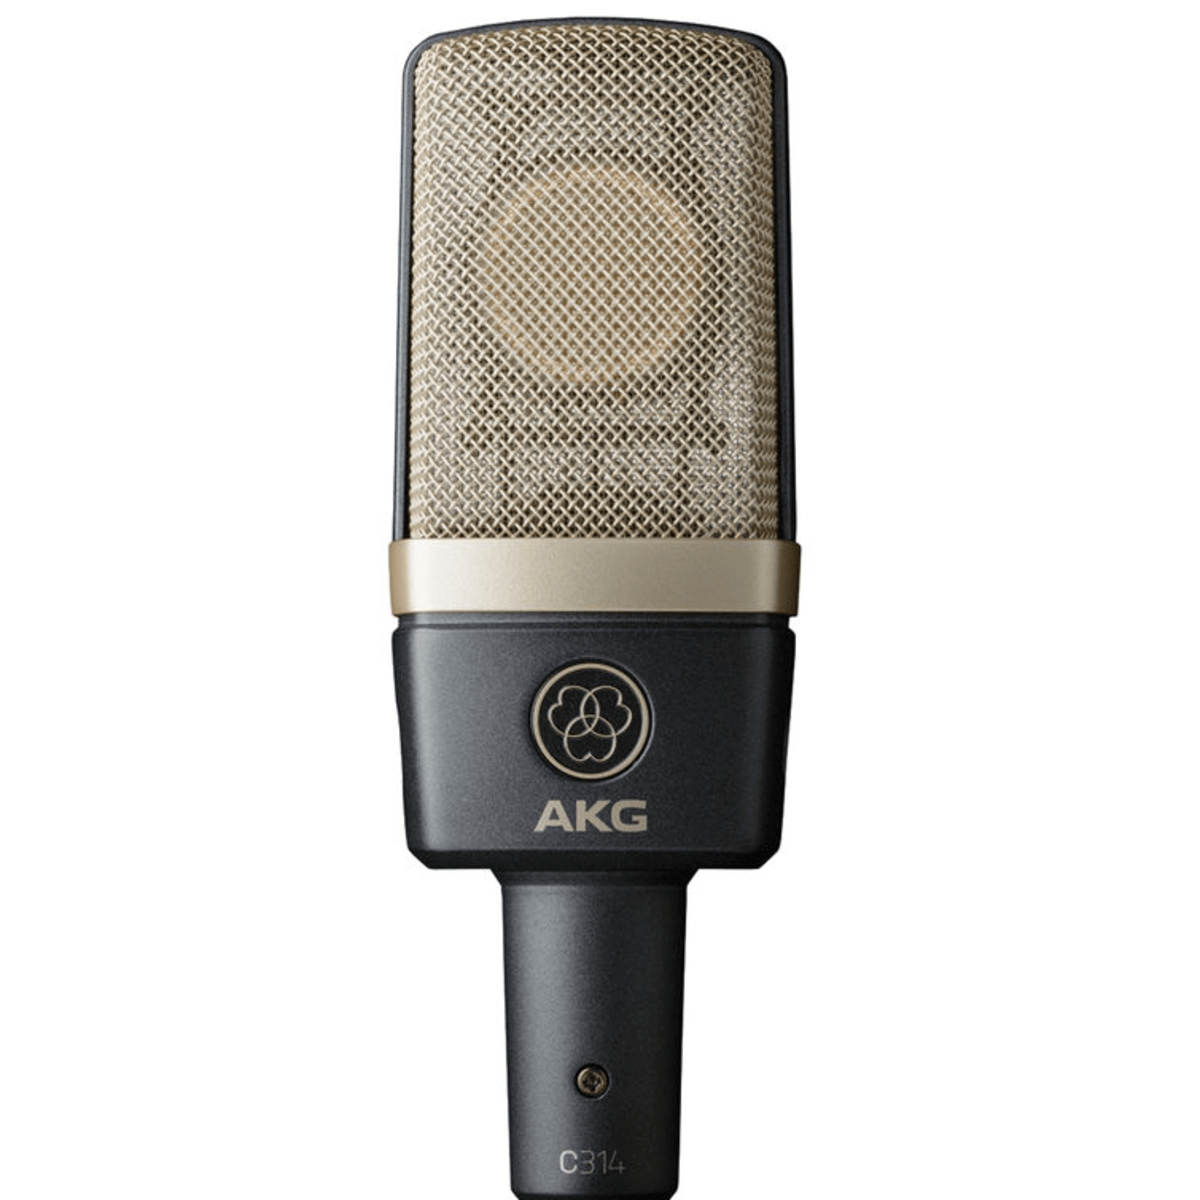 Gutmann microfono antivento per AKG c314 